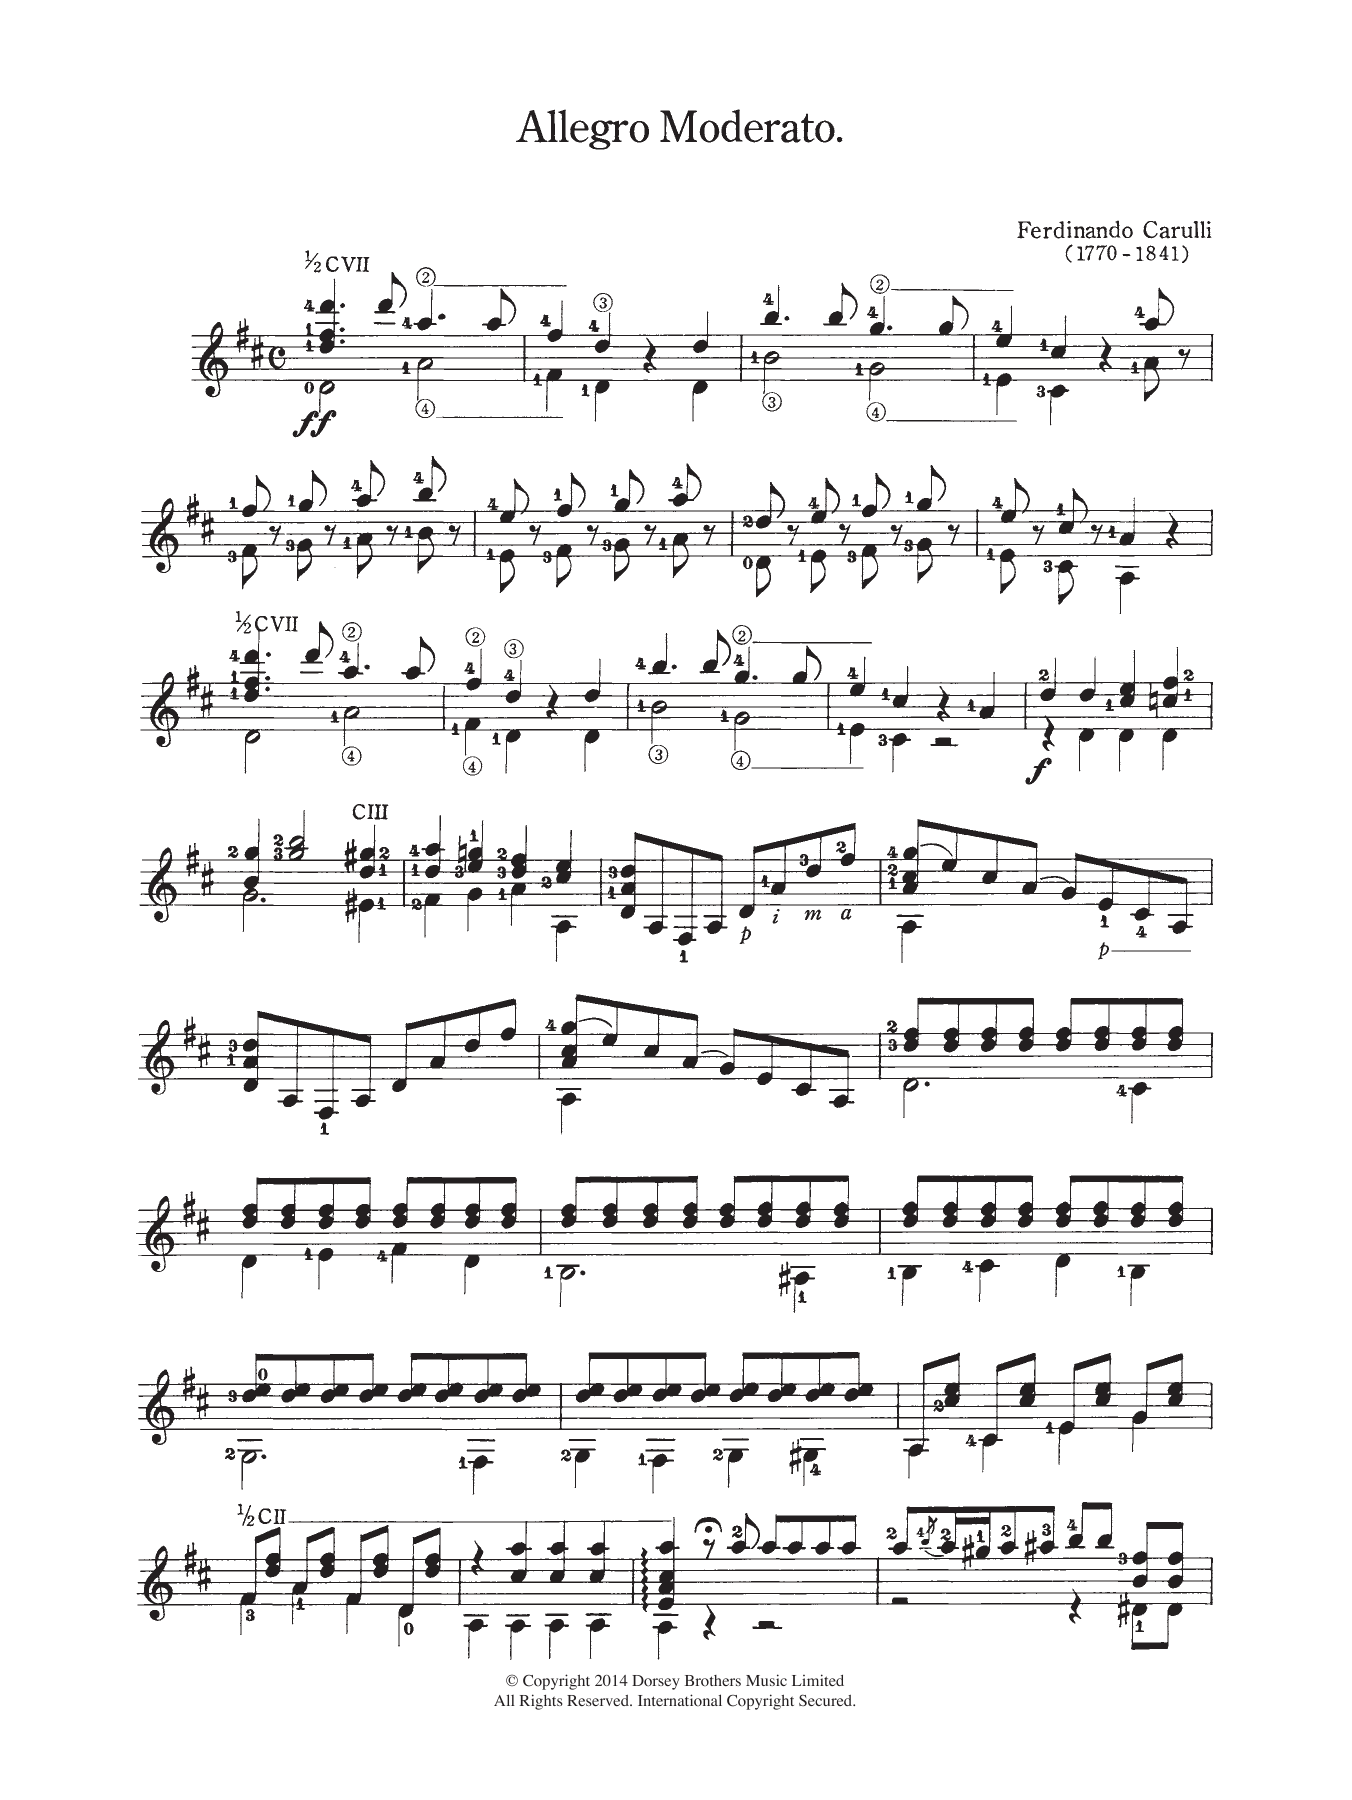 Download Ferdinando Carulli Allegro Moderato Sheet Music